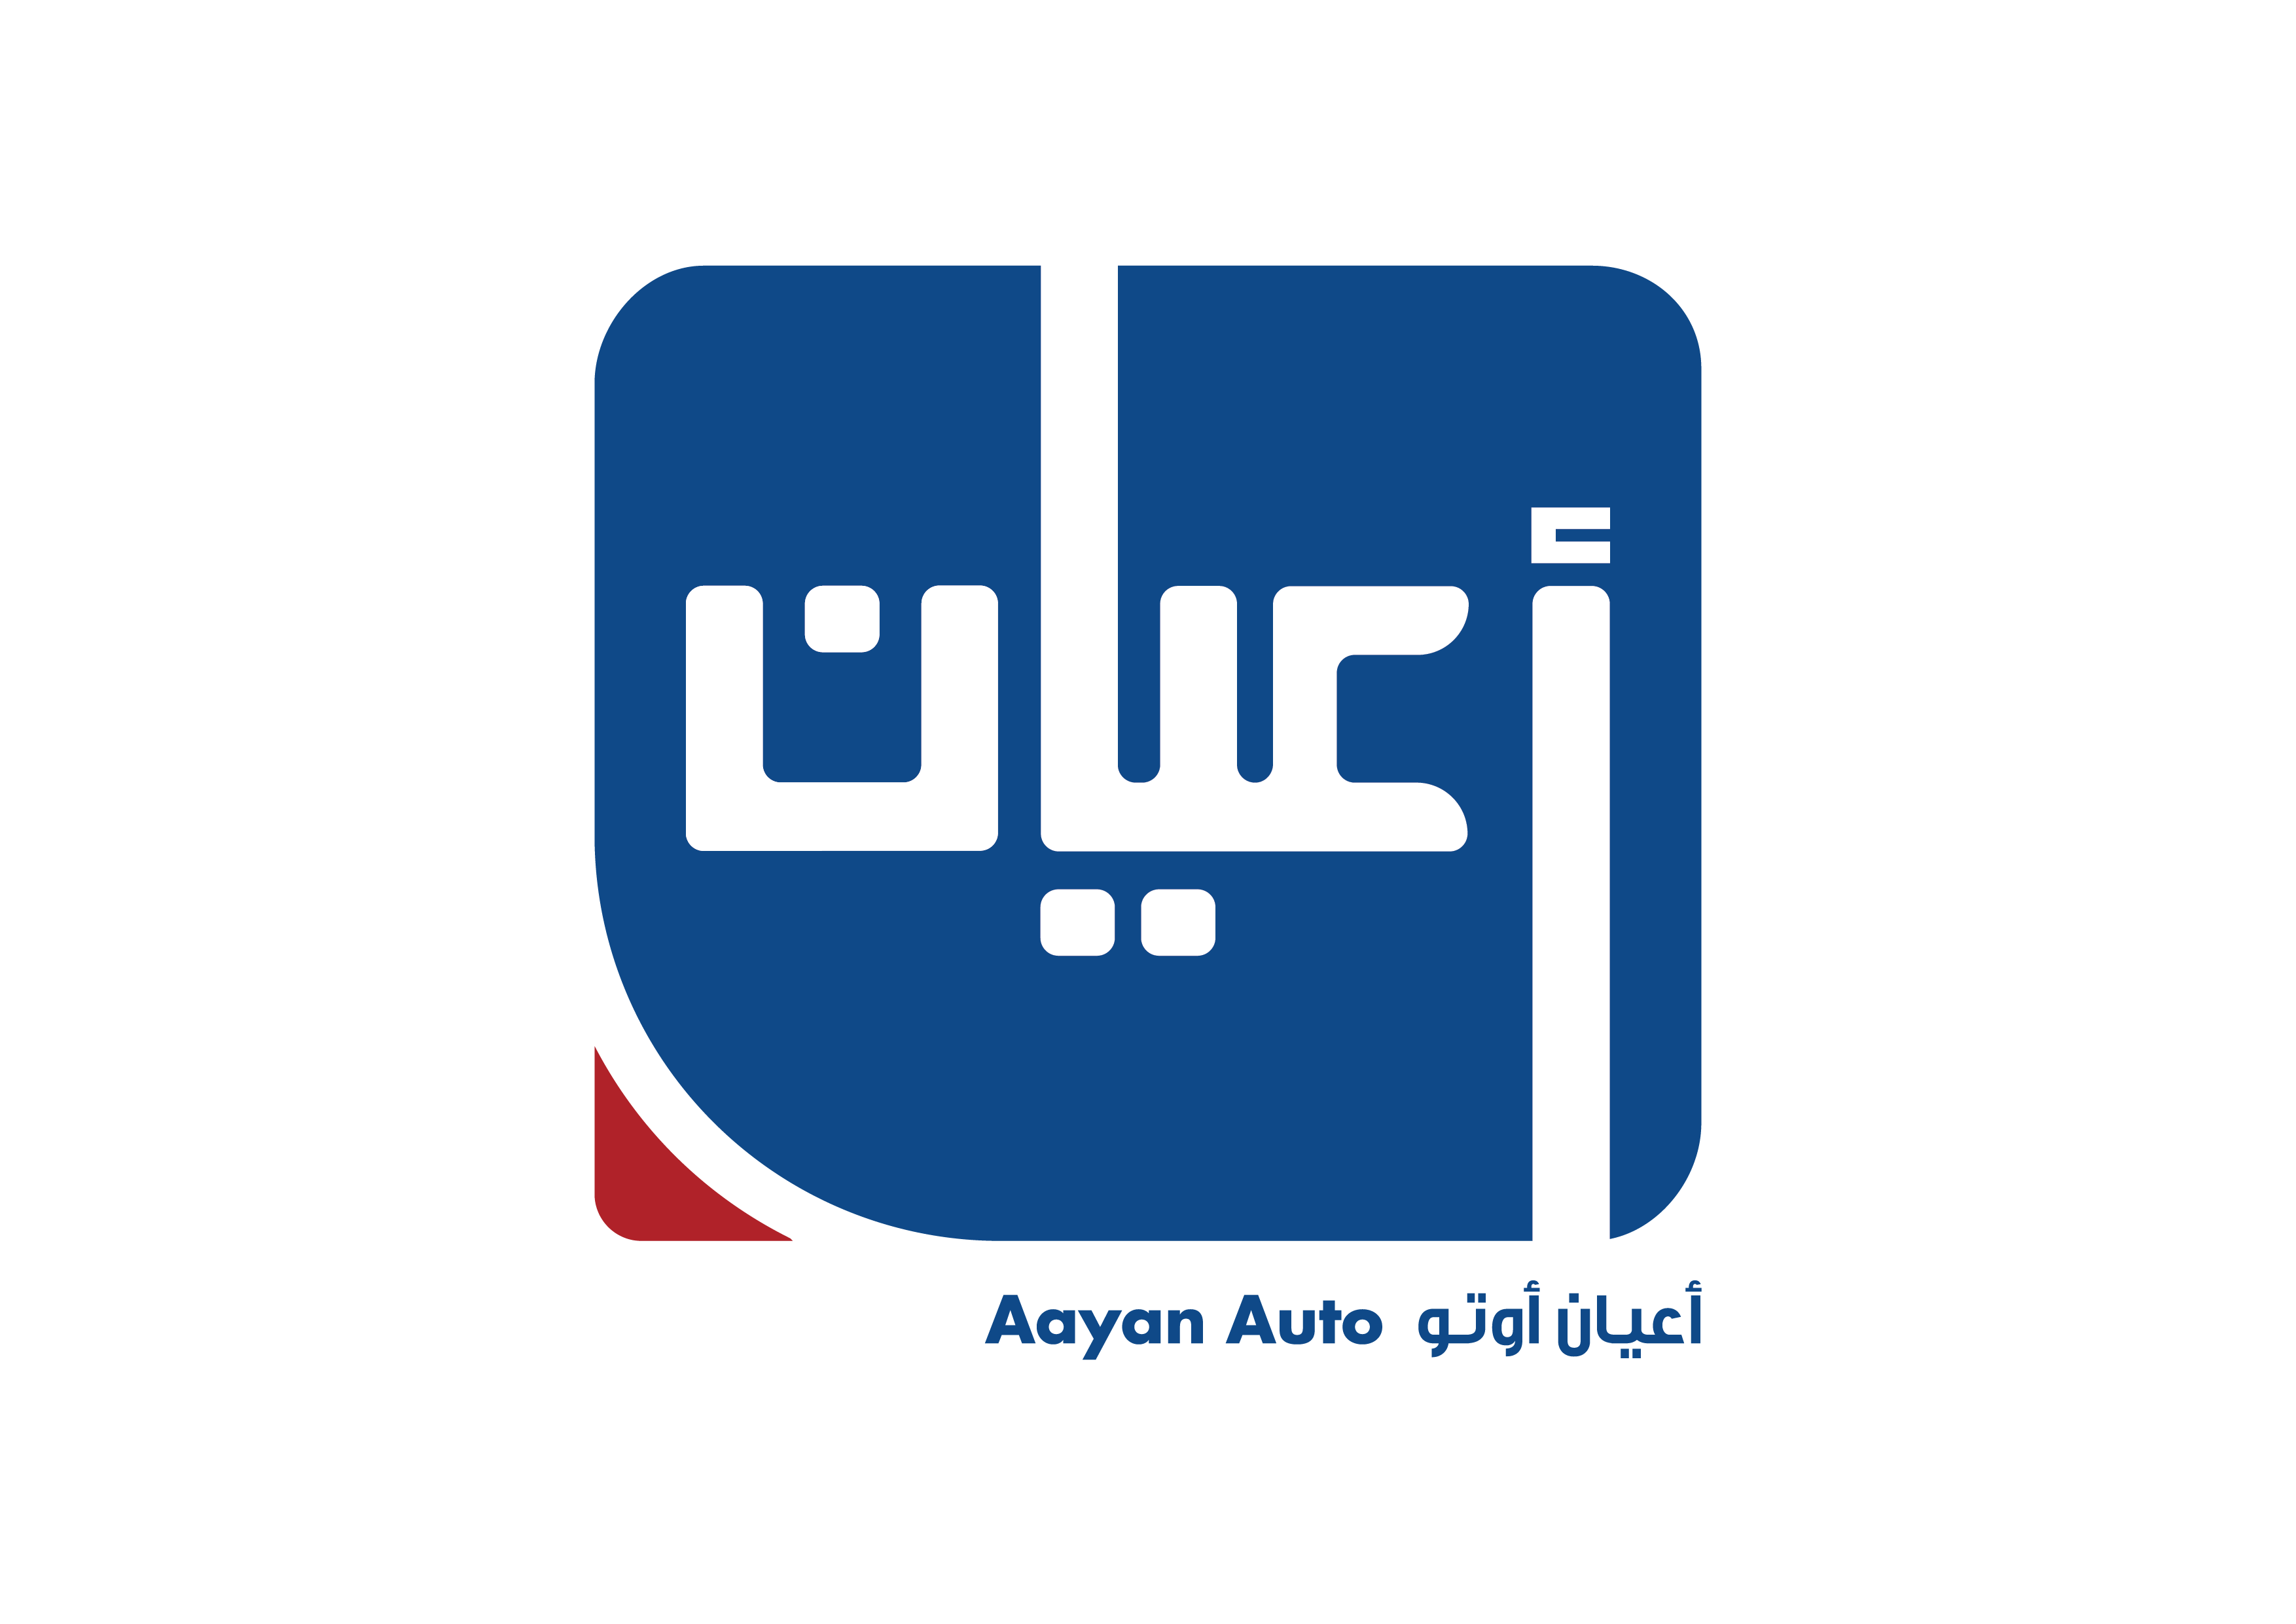 Aayan Kuwait Auto Company